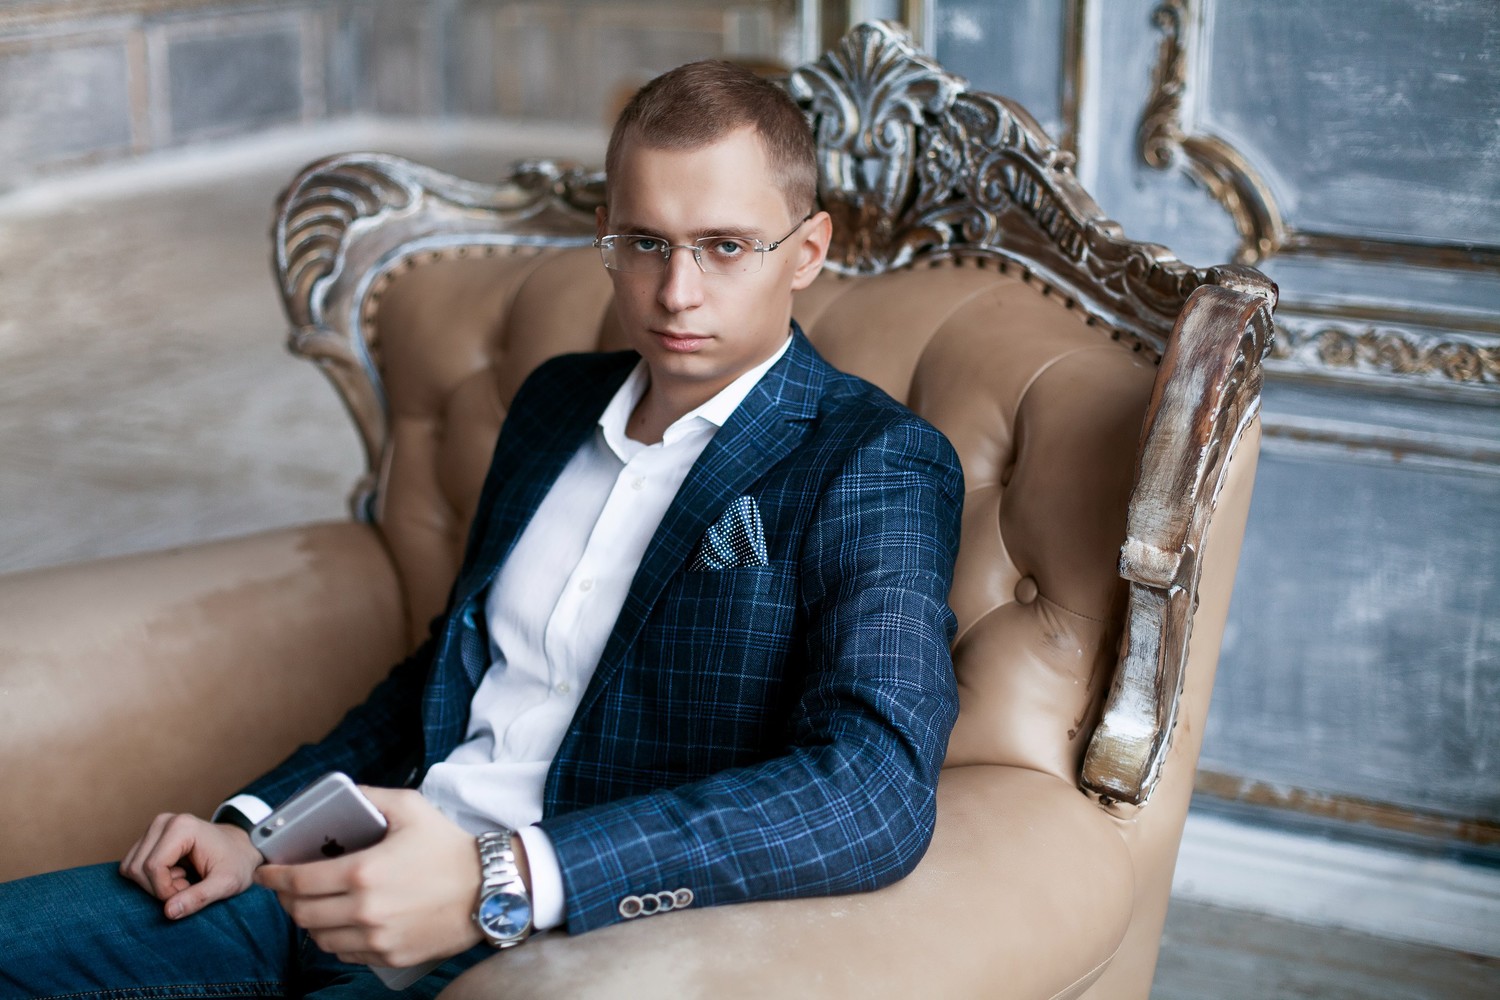 Сергей Хитров (Sergei Khitrov) - Предприниматель, инвестор и блогер